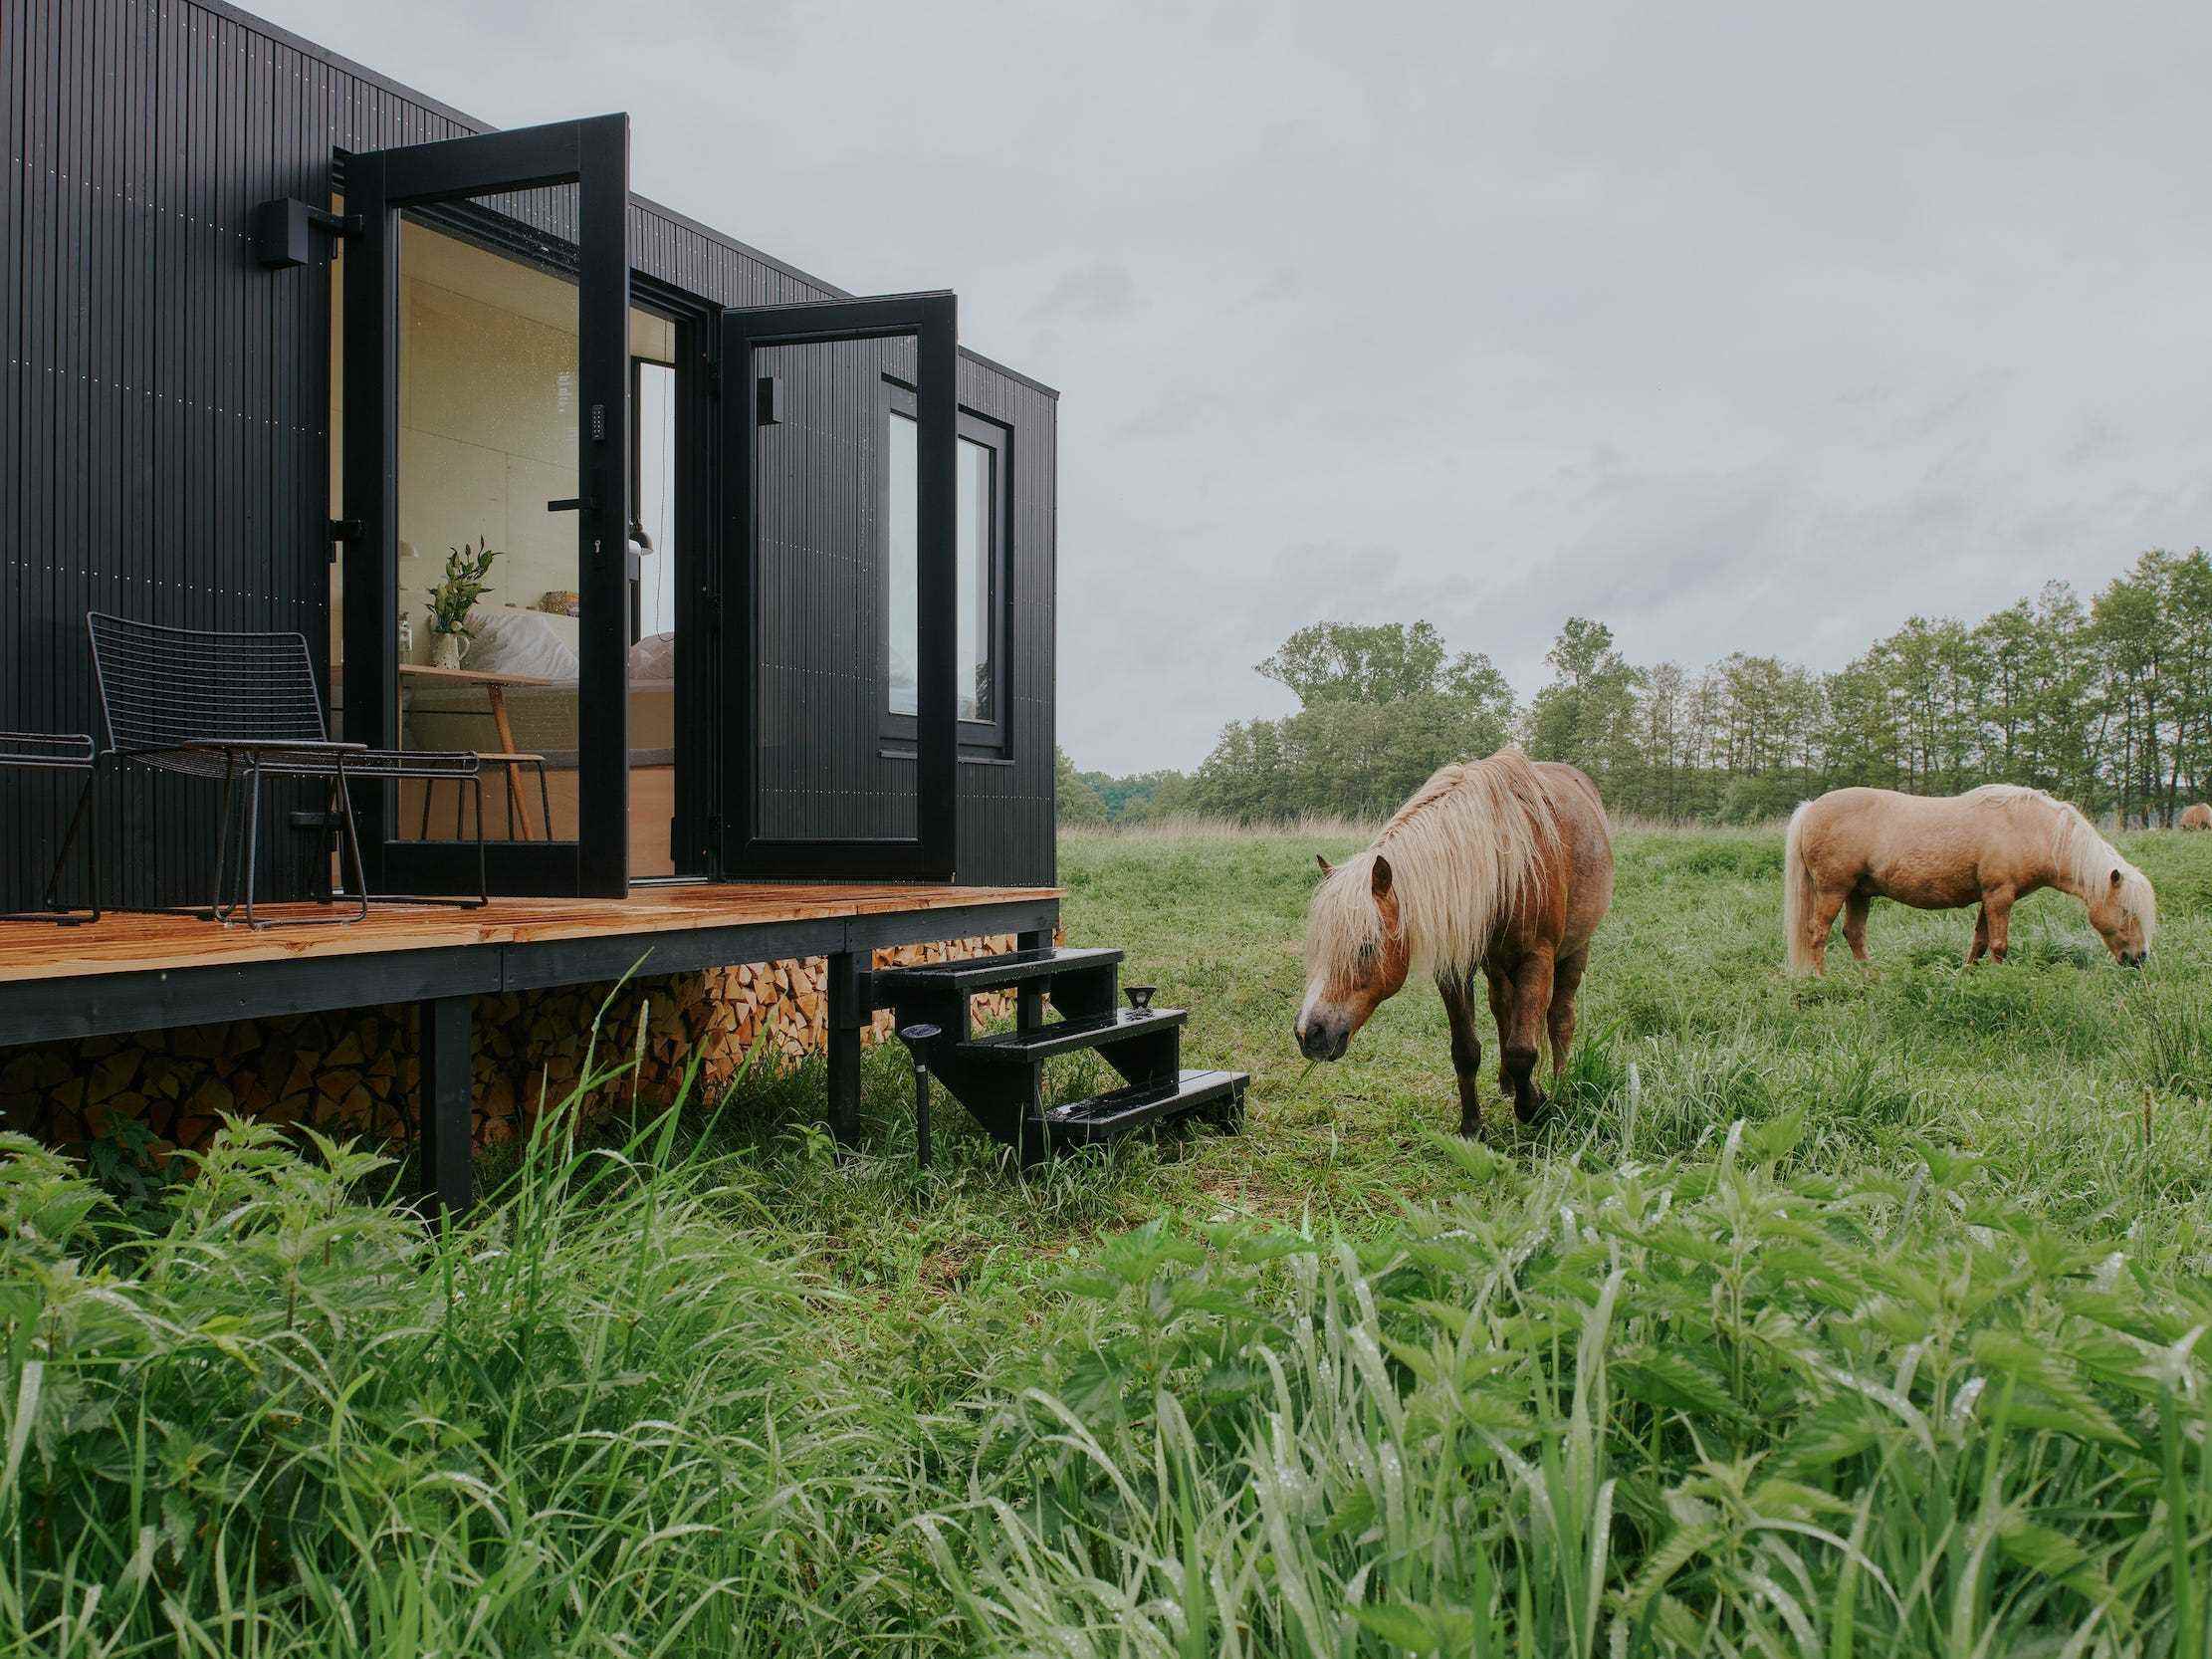 Eine Raus-Hütte draußen in der Natur, umgeben von Bäumen und Tieren.